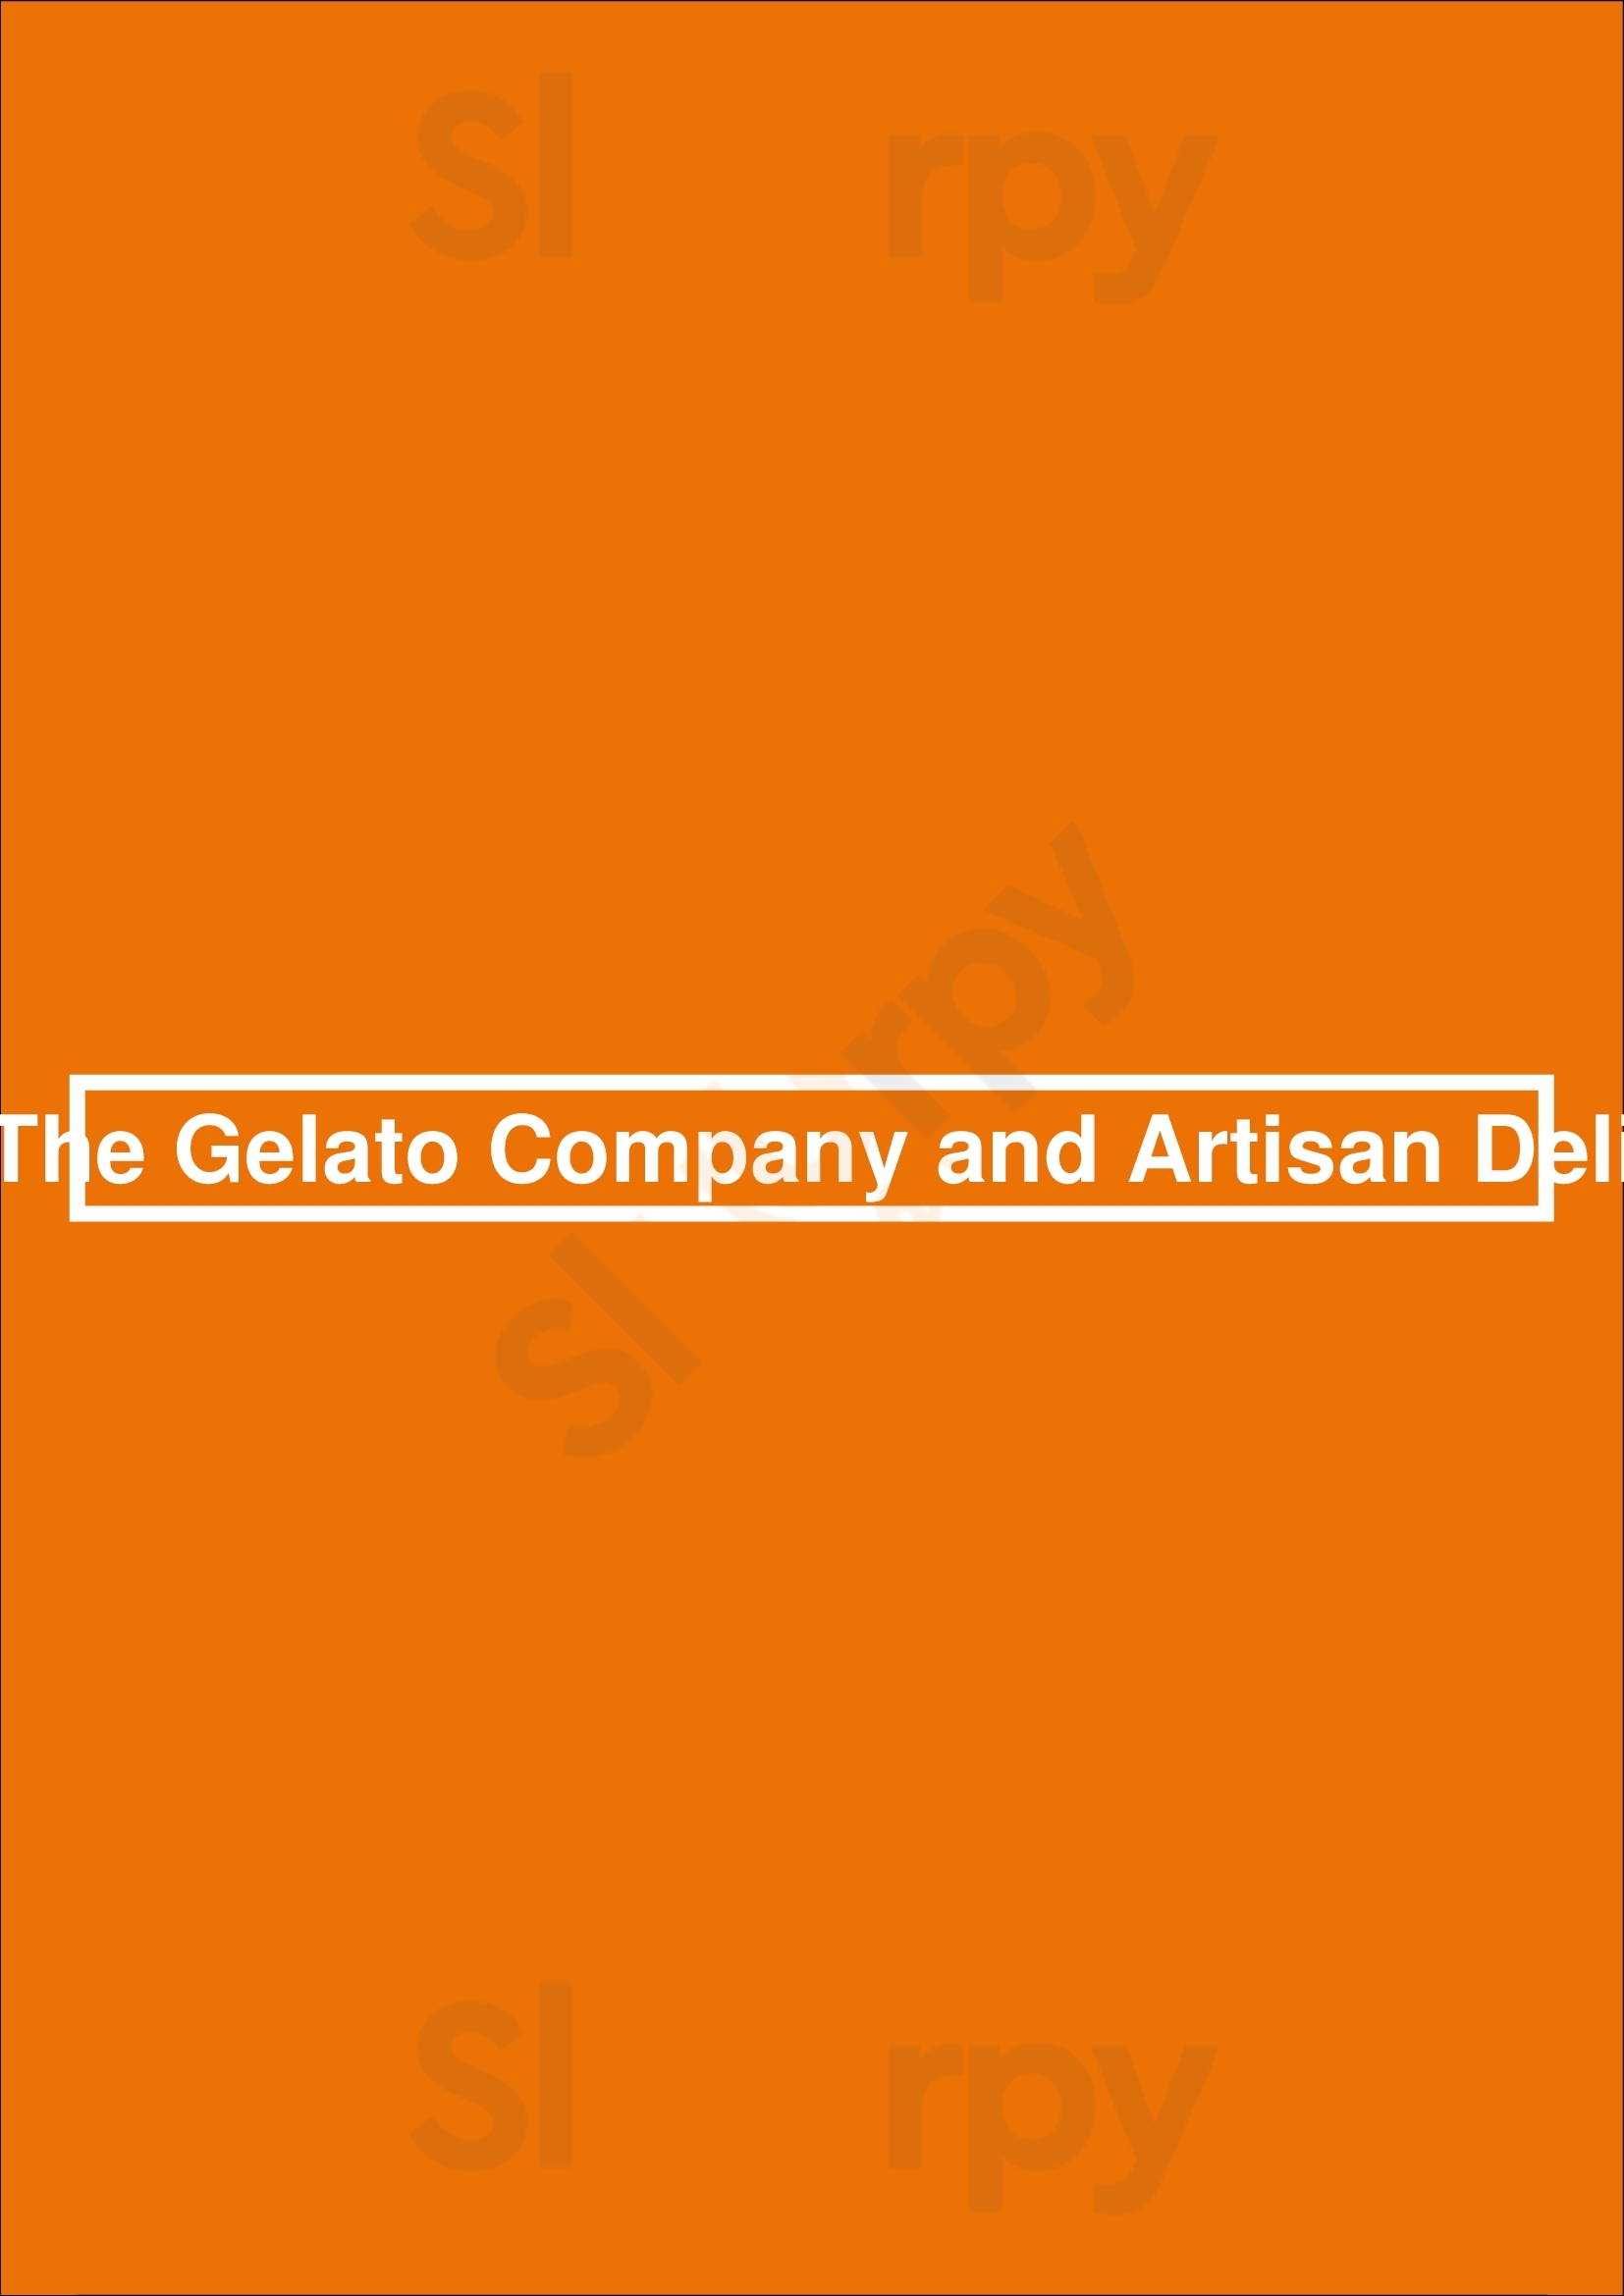 The Gelato Company And Artisan Deli Gainesville Menu - 1